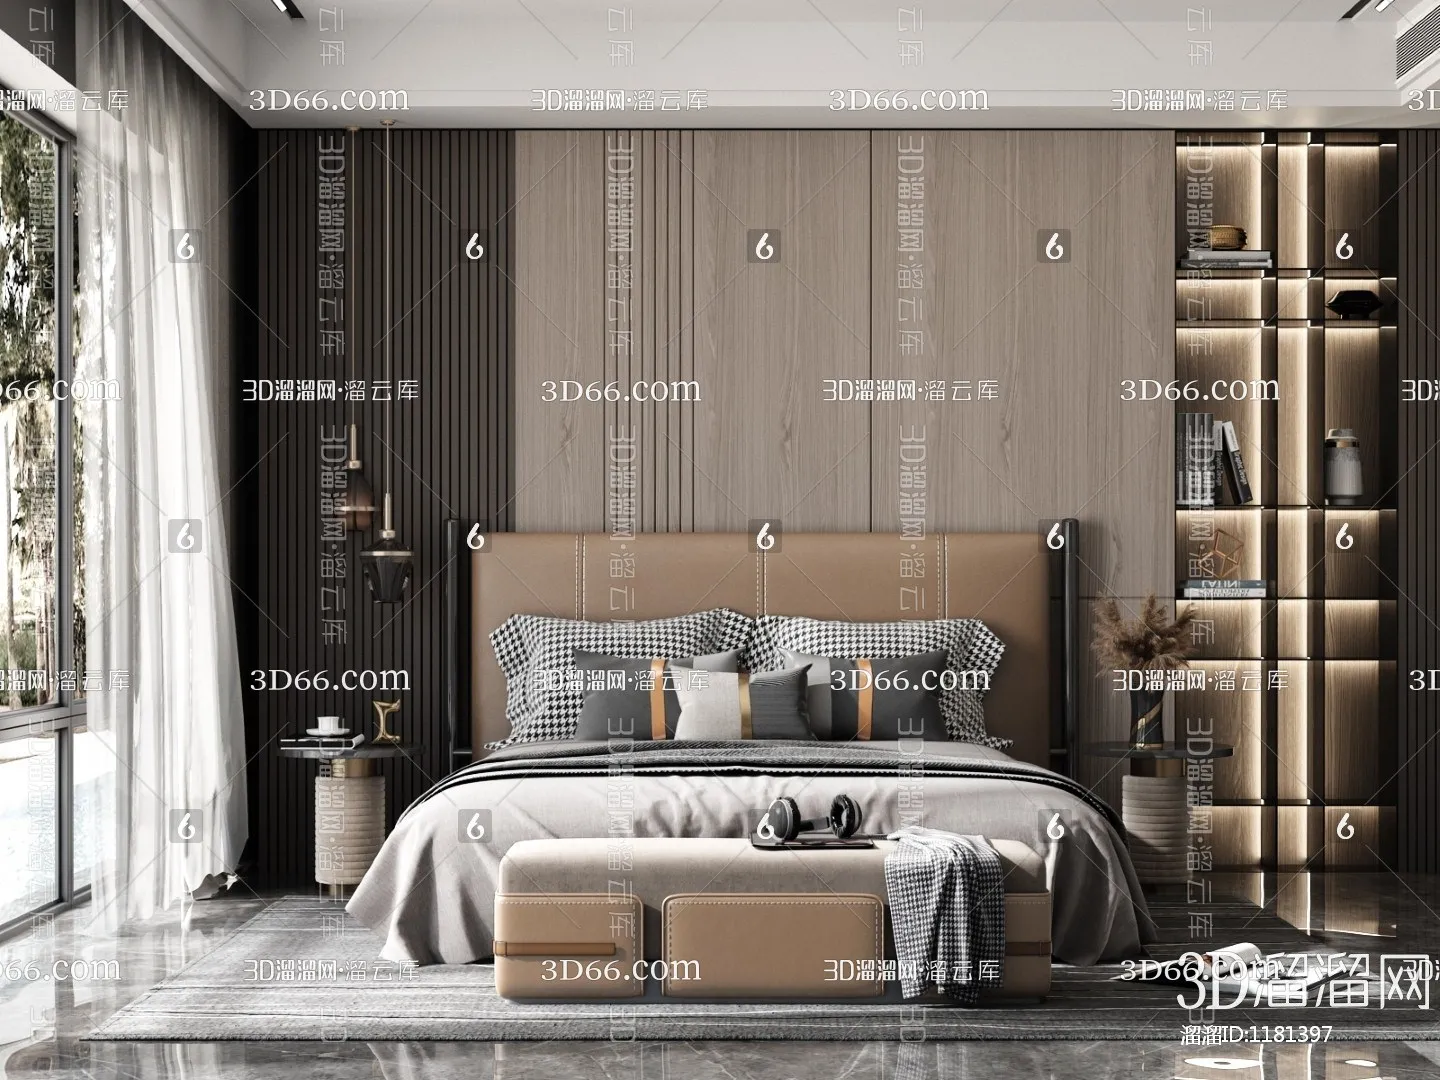 Bedroom 3D Scenes – 0193